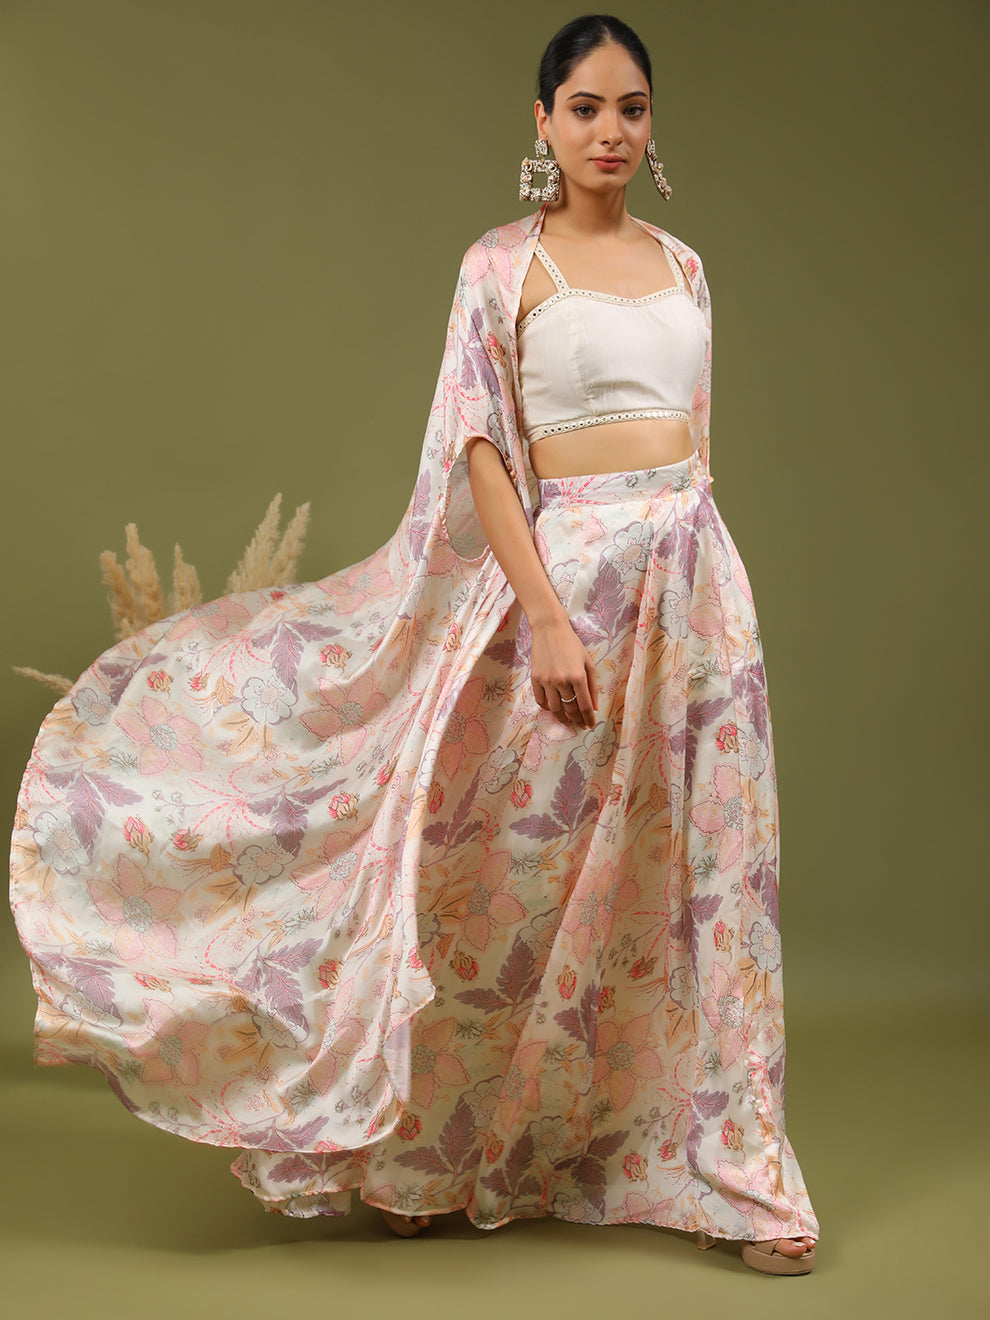 Lace Saree Traditional Lehenga Choli Blouse - Buy Lace Saree Traditional  Lehenga Choli Blouse online in India